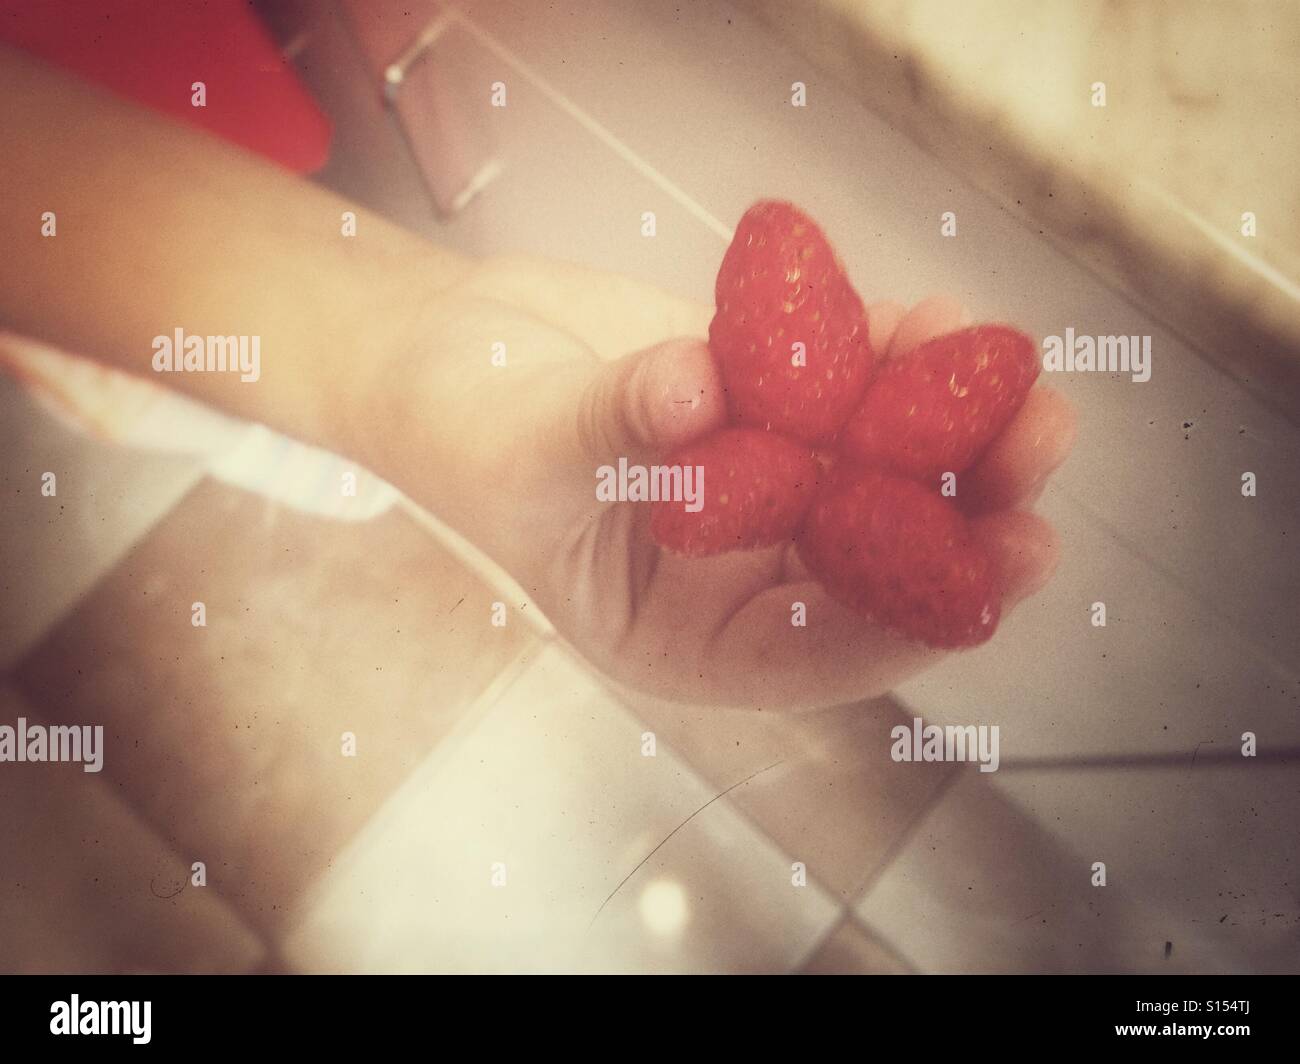 Little girl's hand holding strawberries. Stock Photo